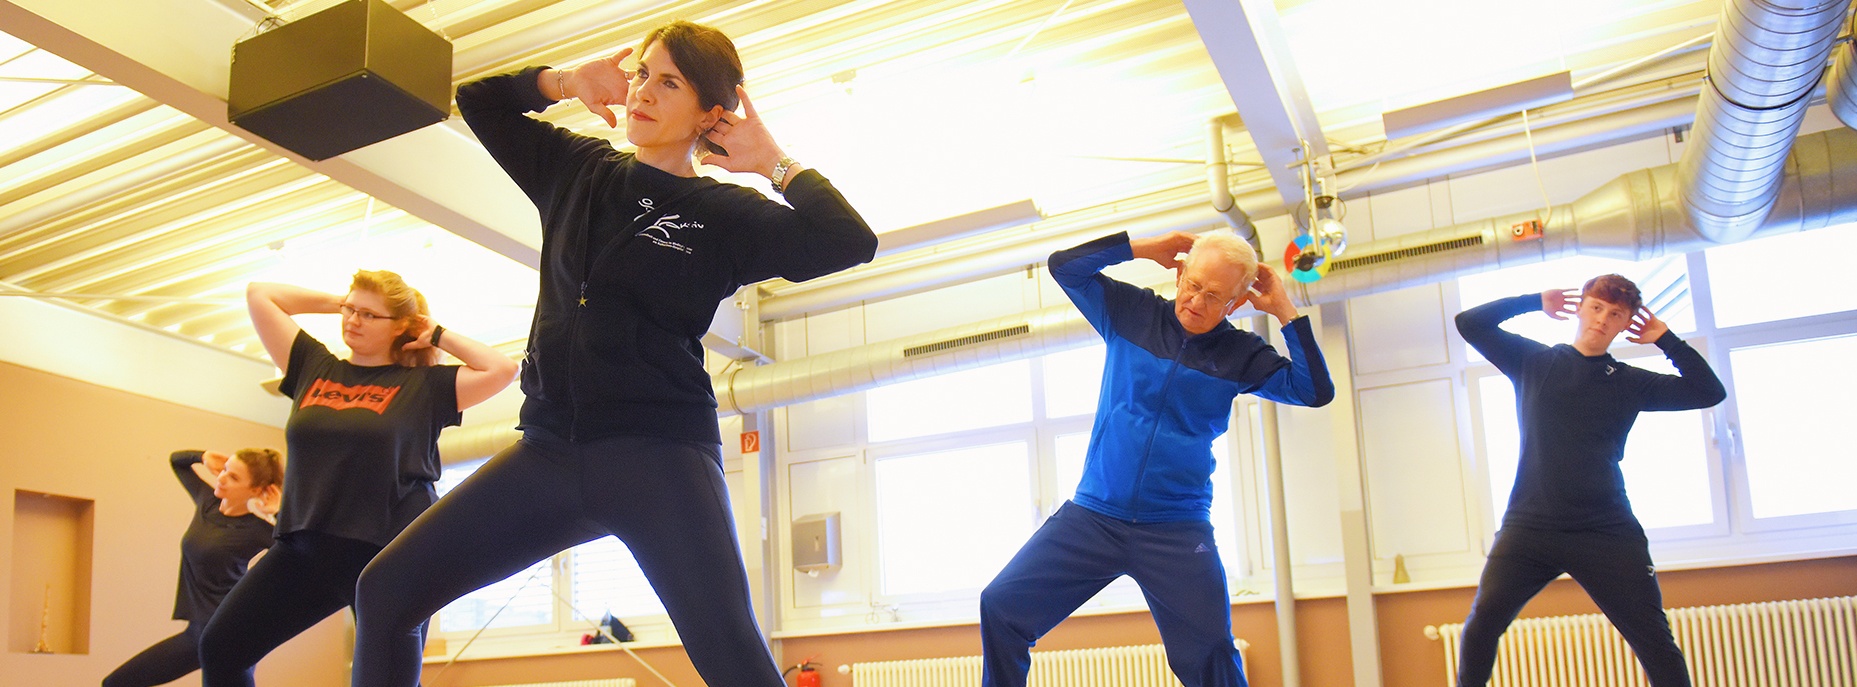 Foto: die Aktiv-Fitness-Trainerin zeigt Übungen und Teilnehmer von allen Altersklassen machen nach.